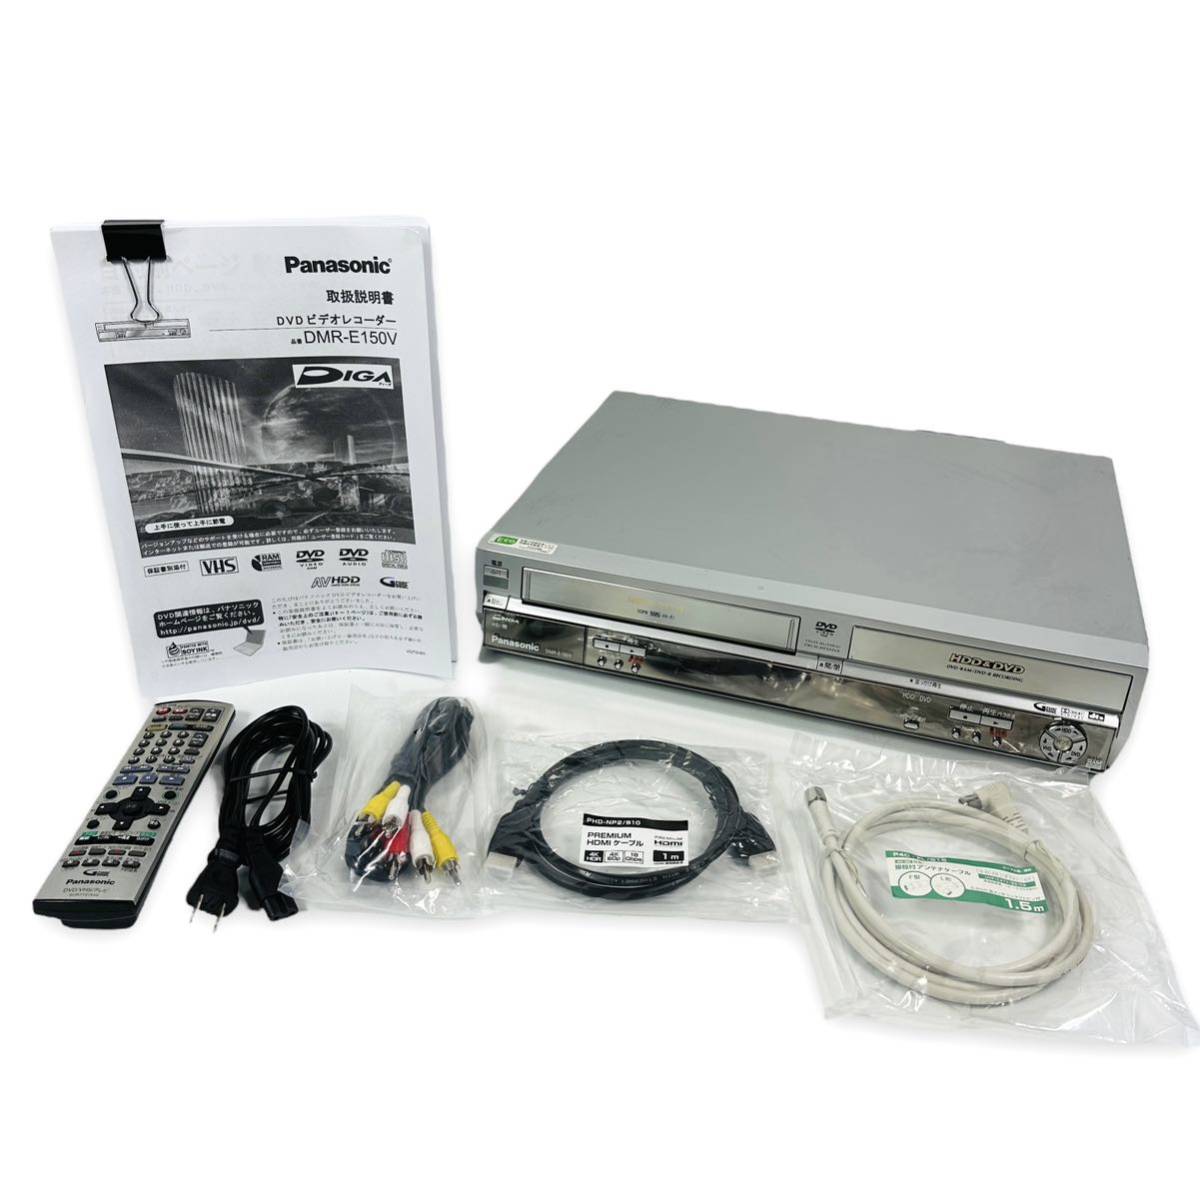 ハイクオリティ vhs dvd 一体型 ブルーレイレコーダーHDD 320GB 1